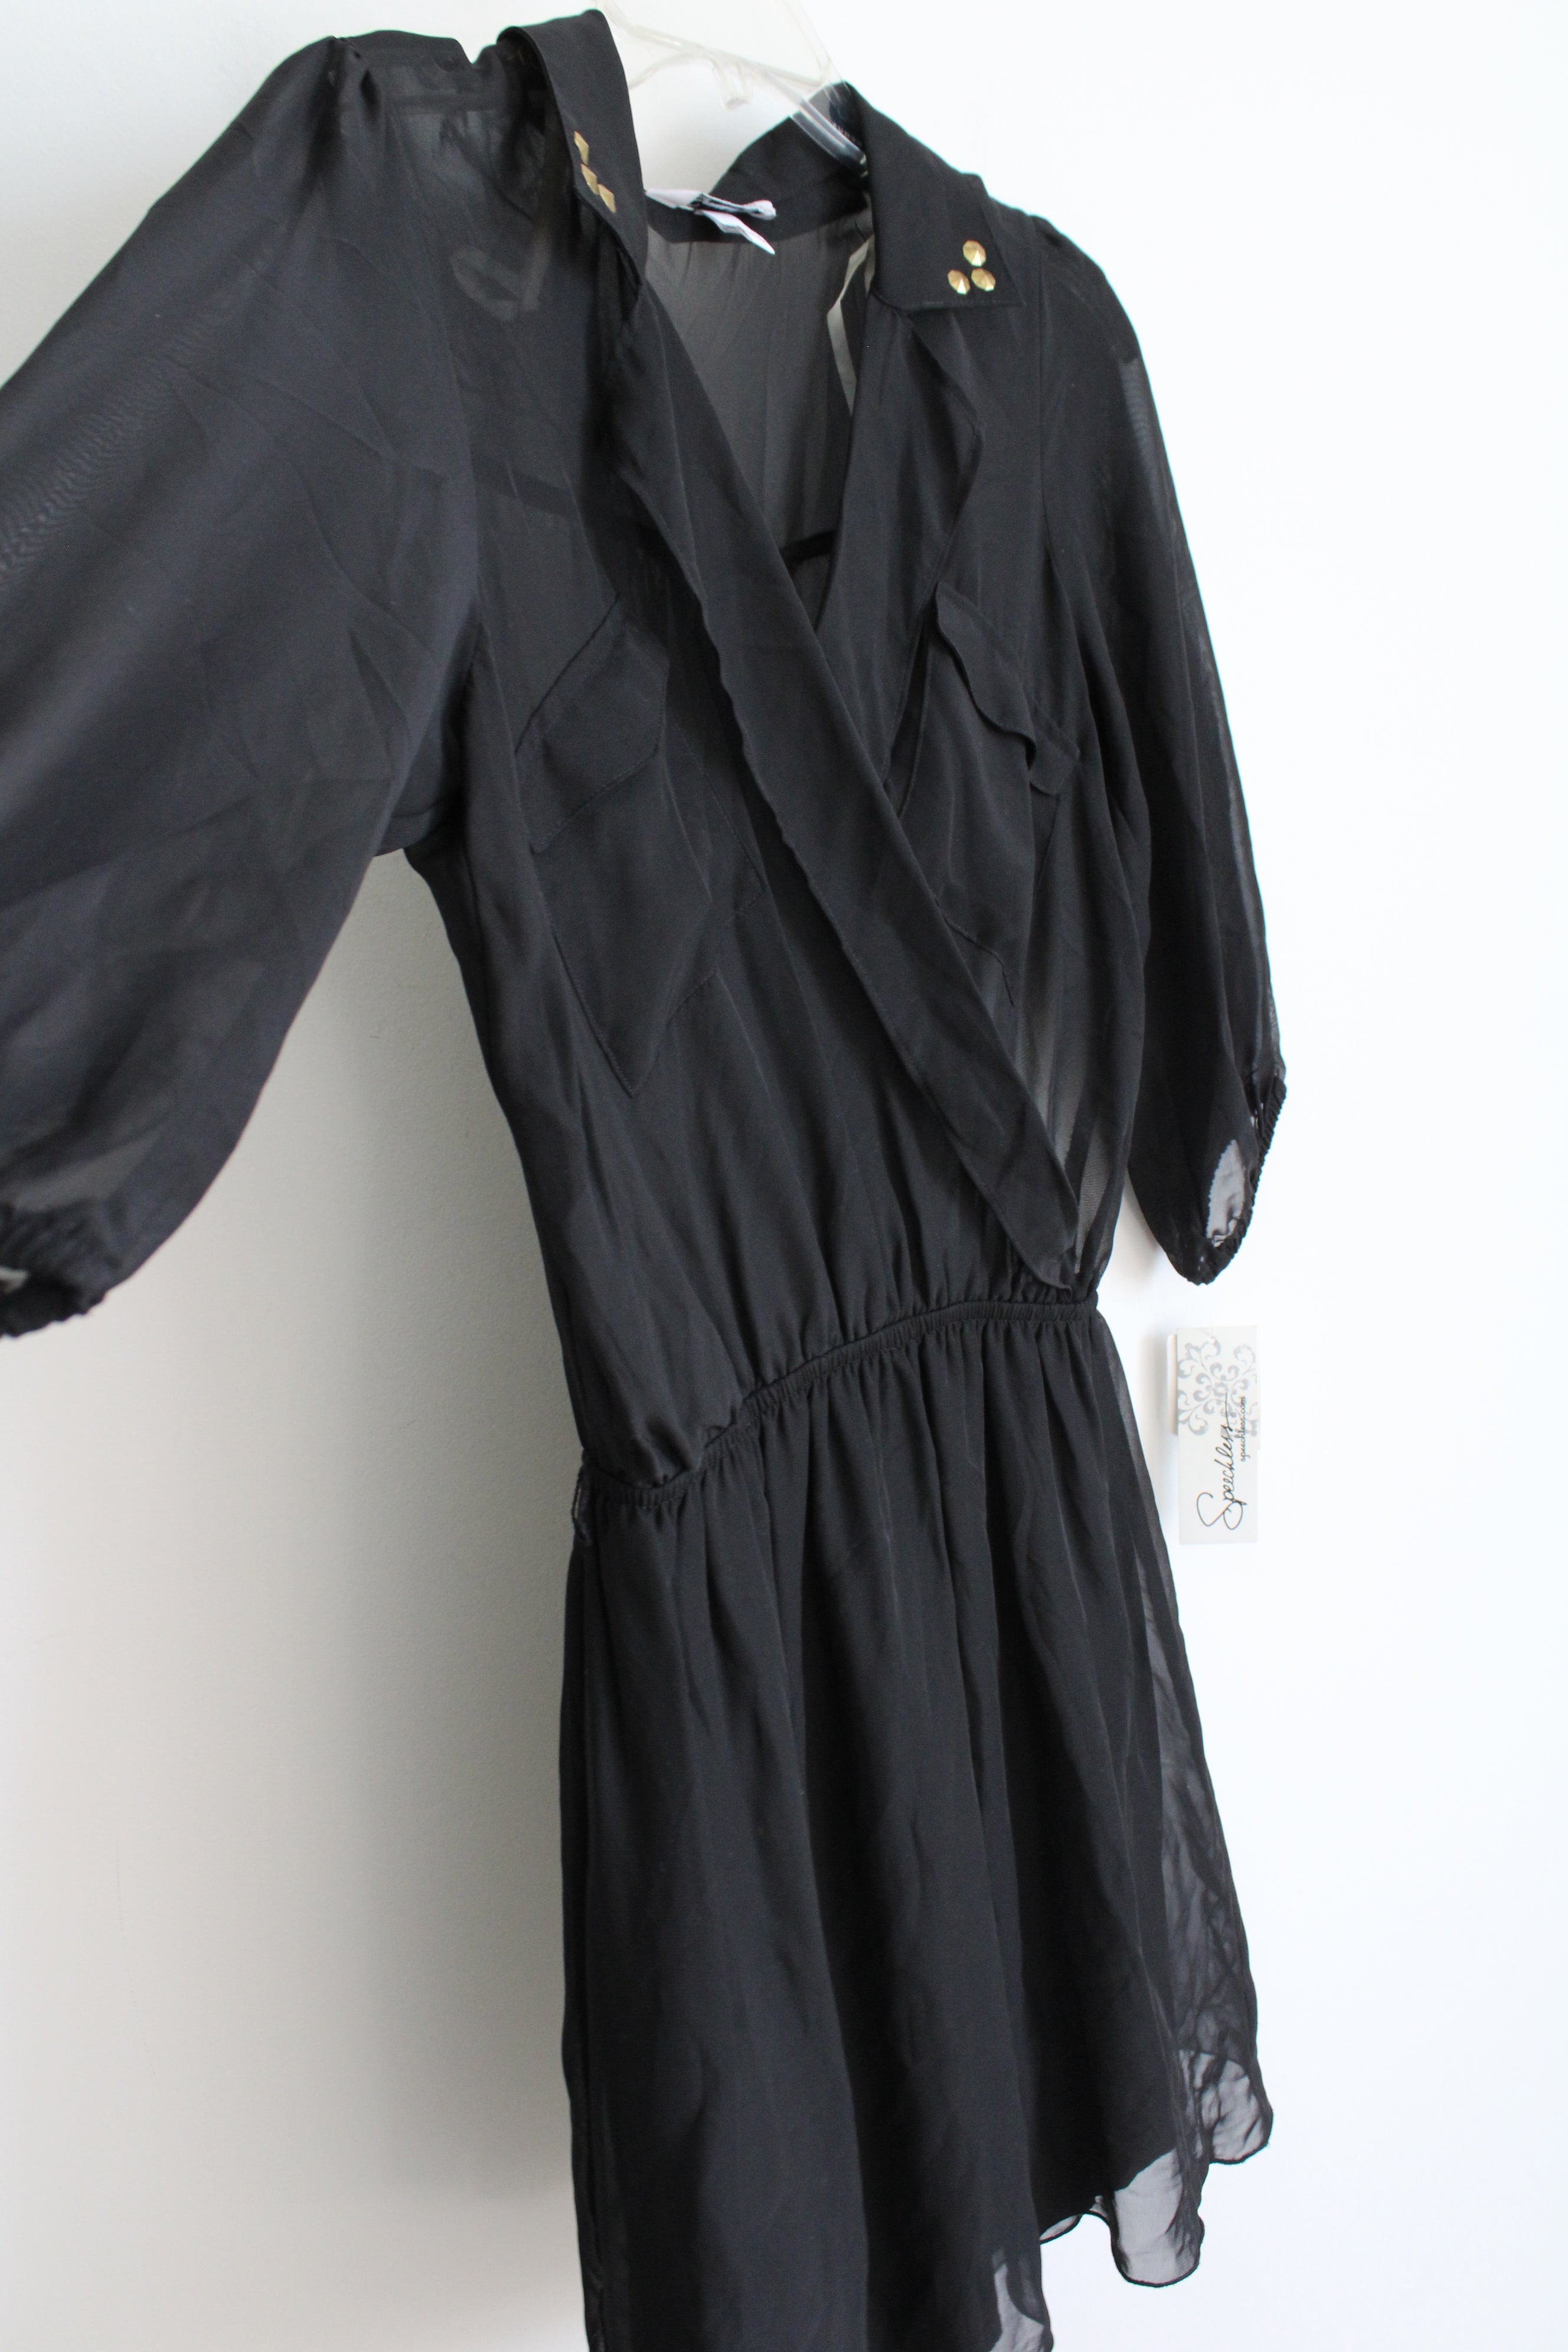 NEW Speechless Black Chiffon Dress | M